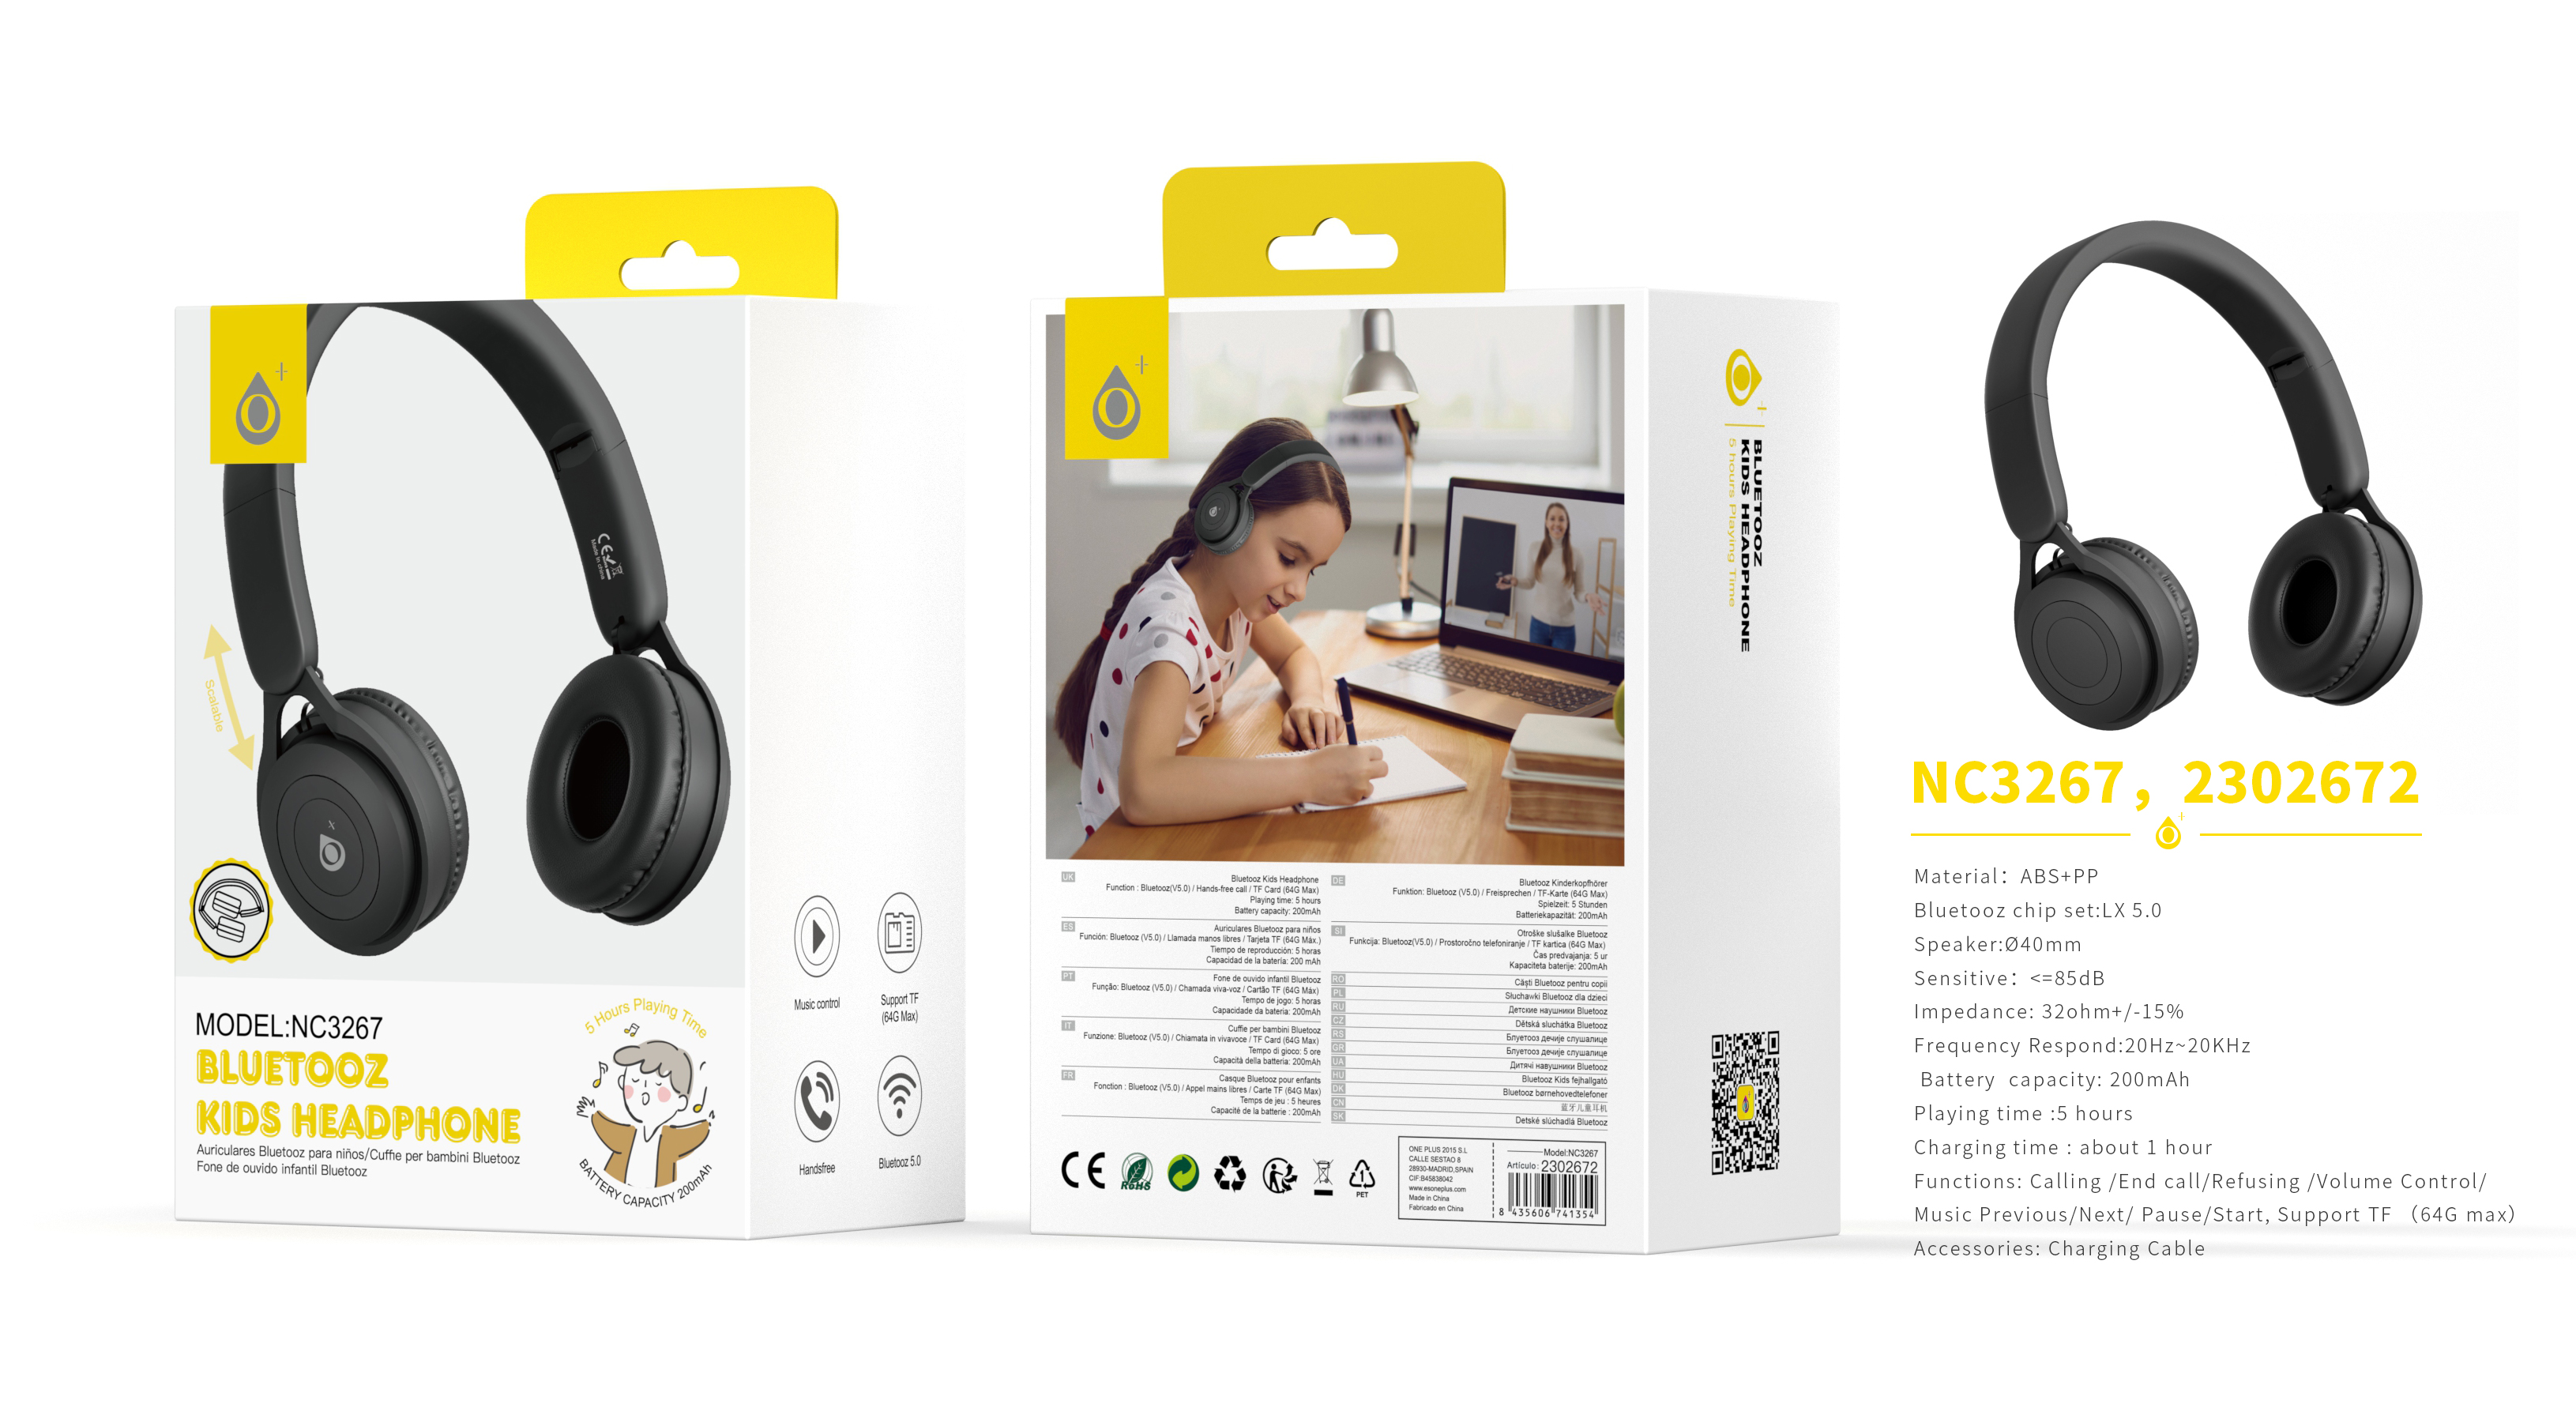 NC3267 NE Auriculares Casco Bluetooth 5.0 Para Ninos con microfono y Botones Multifunciones, Soporta Tarjeta TF(64G), Bateria 200mAh, Negro